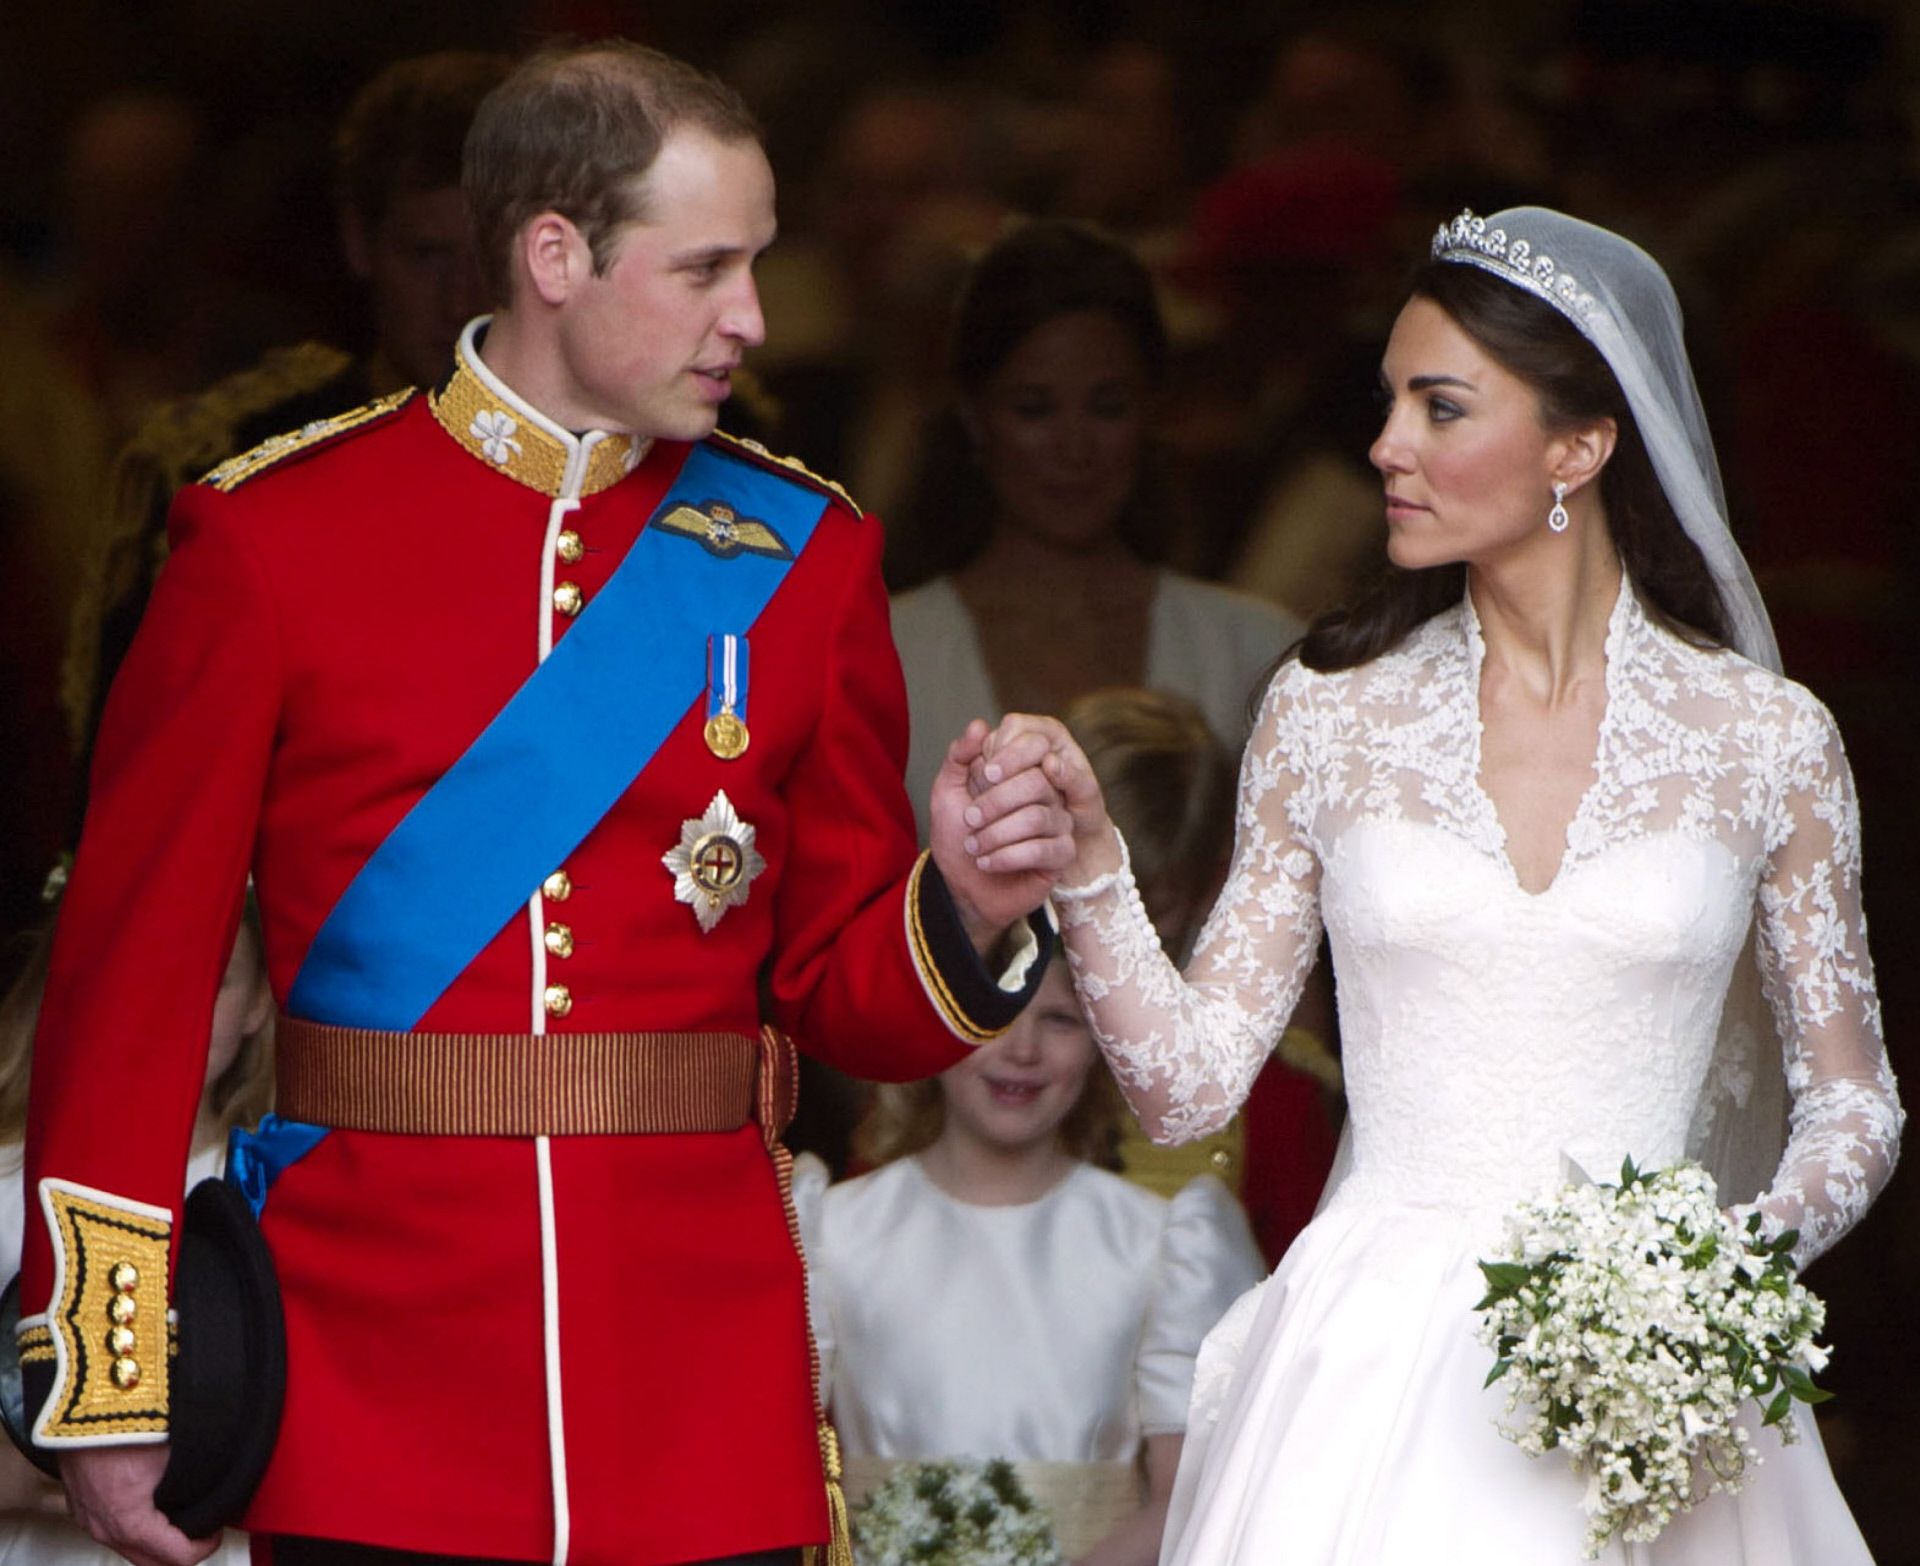 La boda del príncipe Guillermo y Kate Middleton.